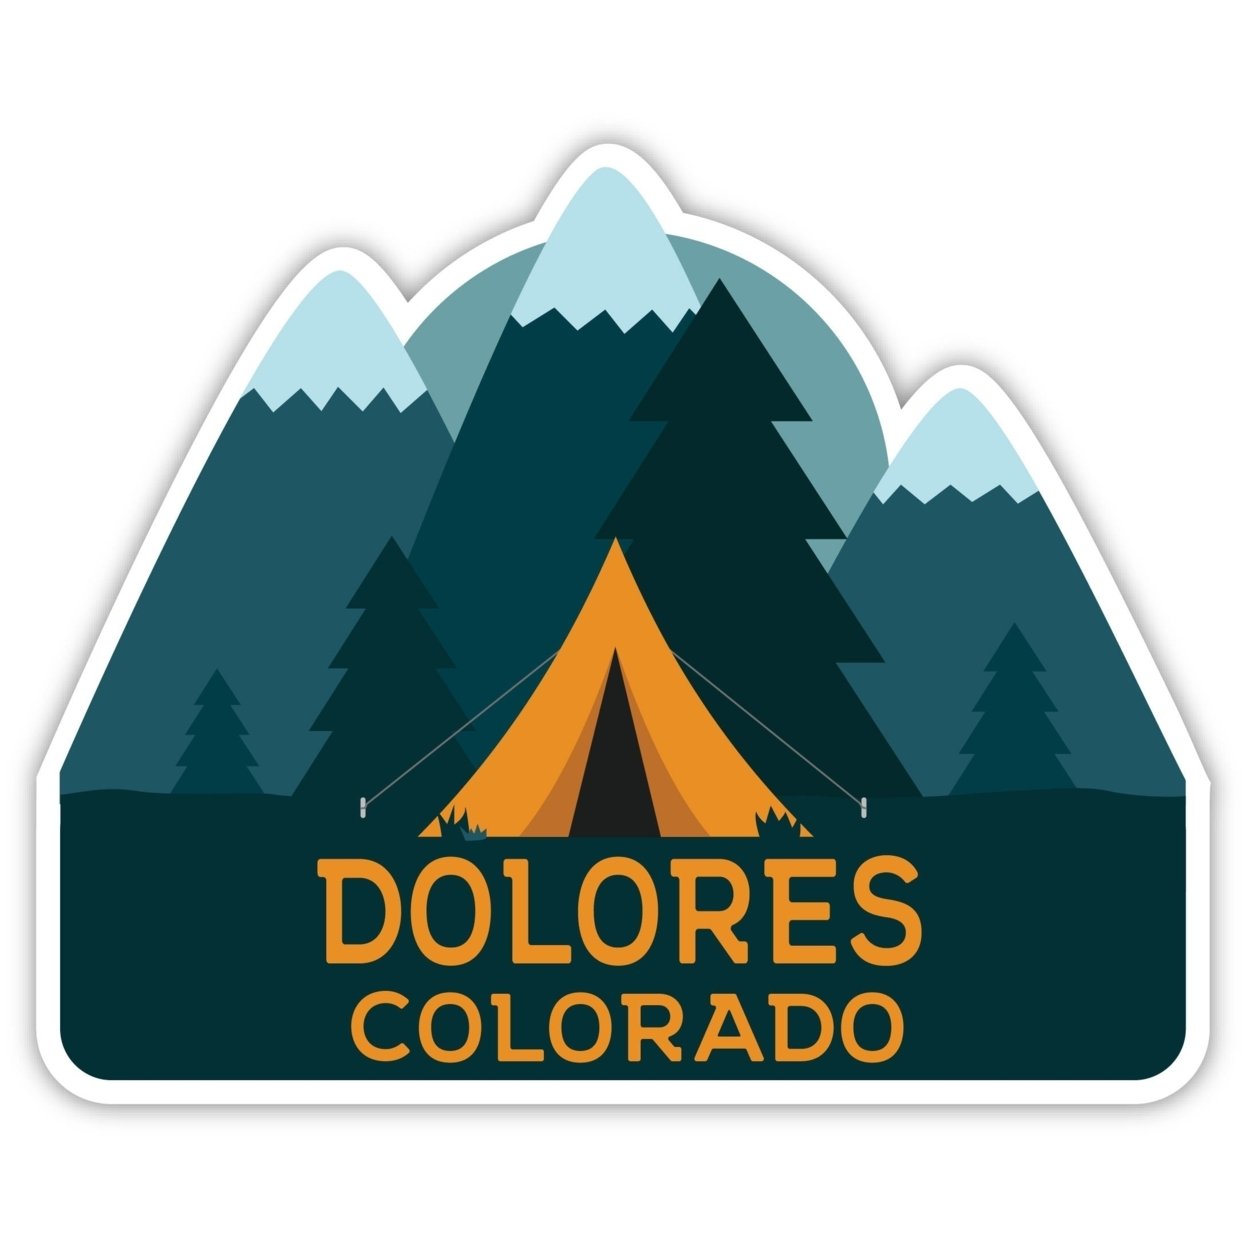 Dolores Colorado Souvenir Decorative Stickers (Choose Theme And Size) - Single Unit, 4-Inch, Tent